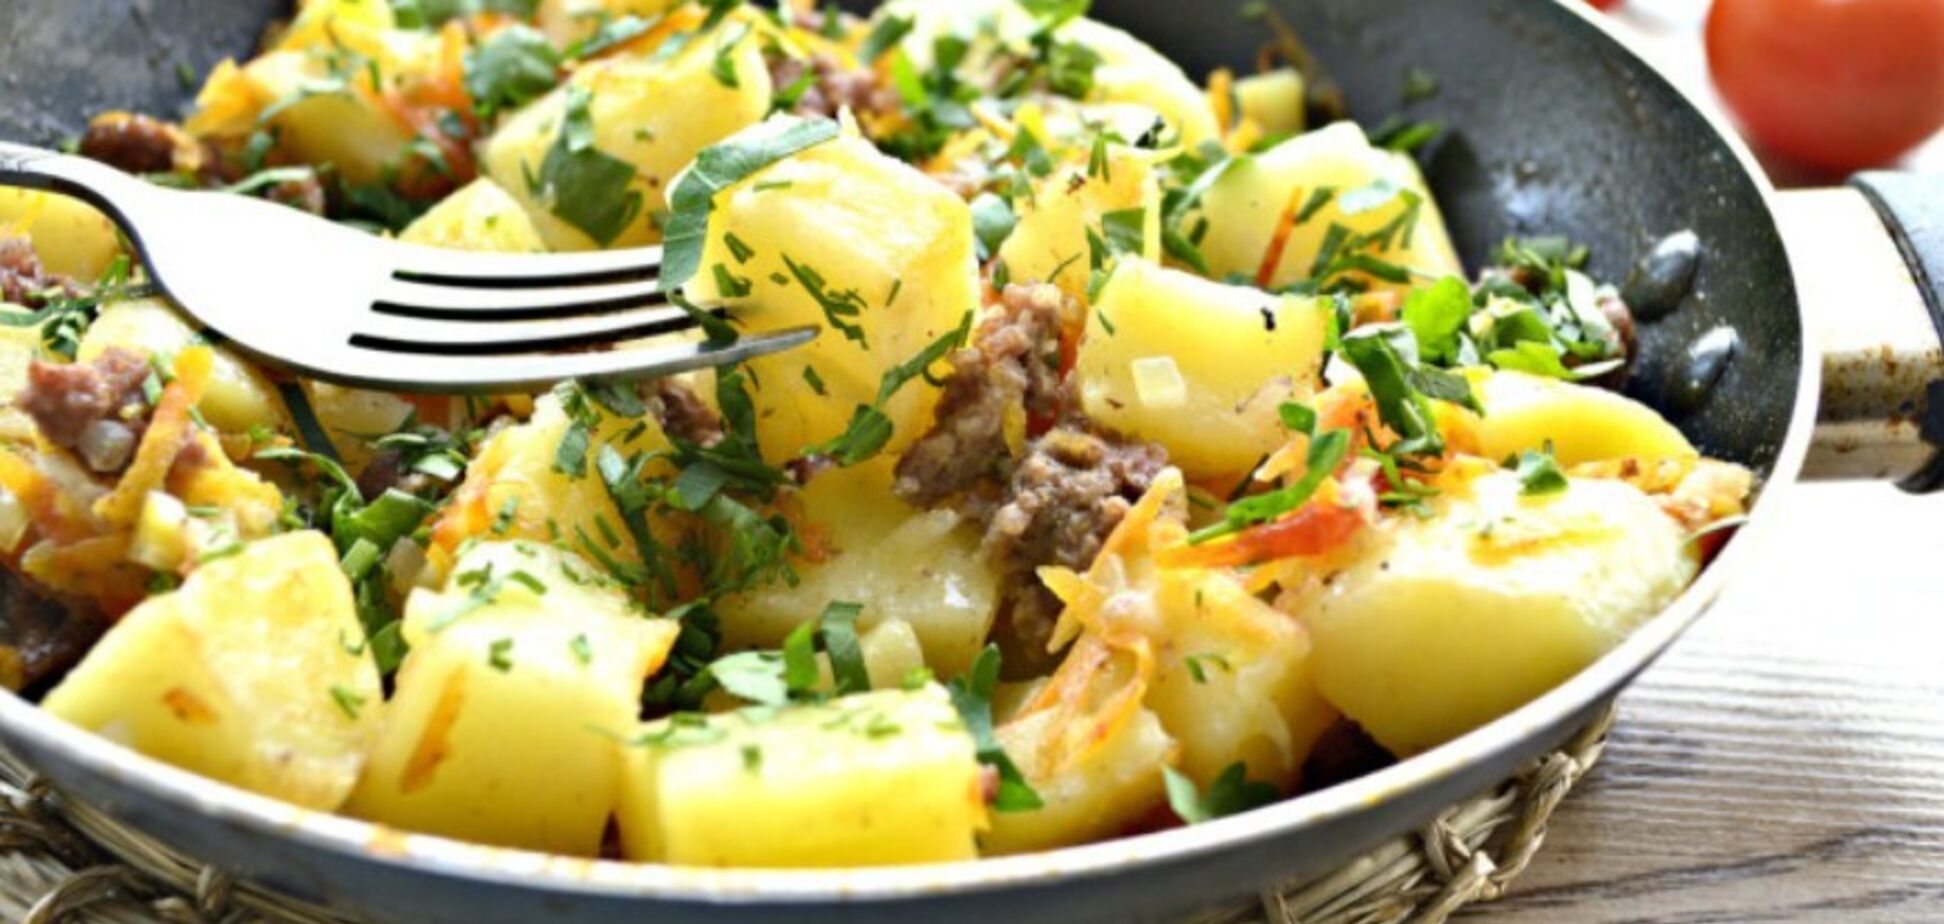 Як смачно приготувати тушковану картоплю: найпростіший рецепт